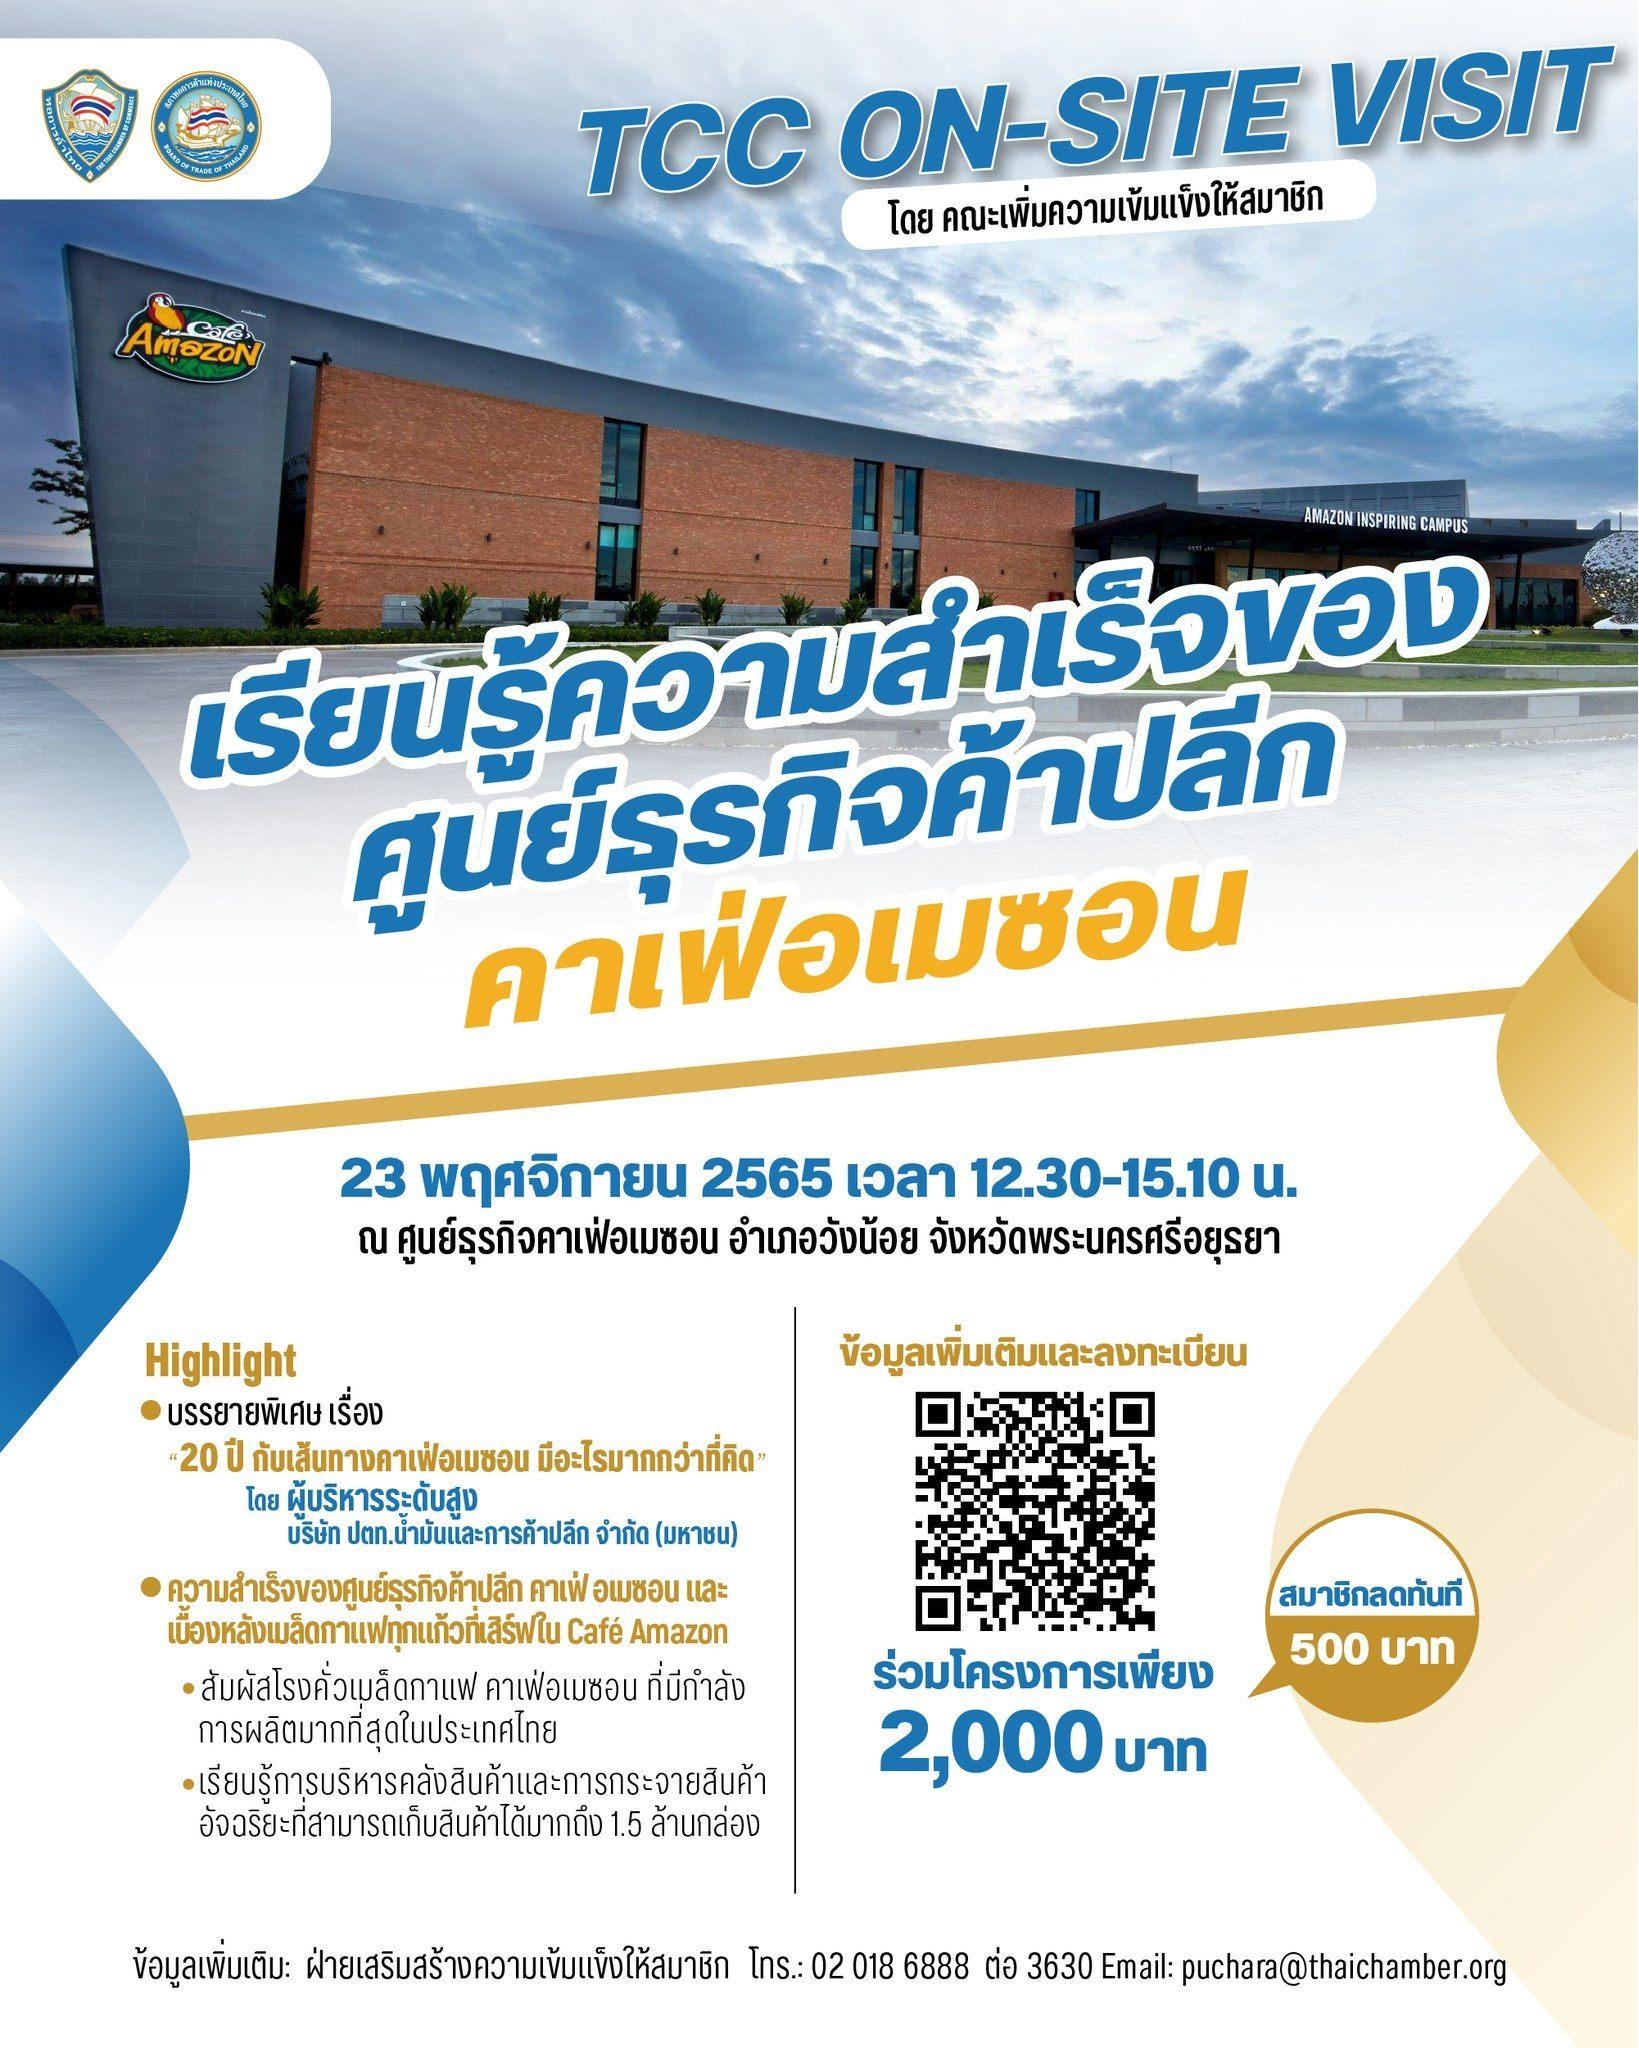 อการค้าไทยขอเชิญชวนนักธุรกิจและทีมงาน ร่วมกิจกรรม TCC On-site Visit